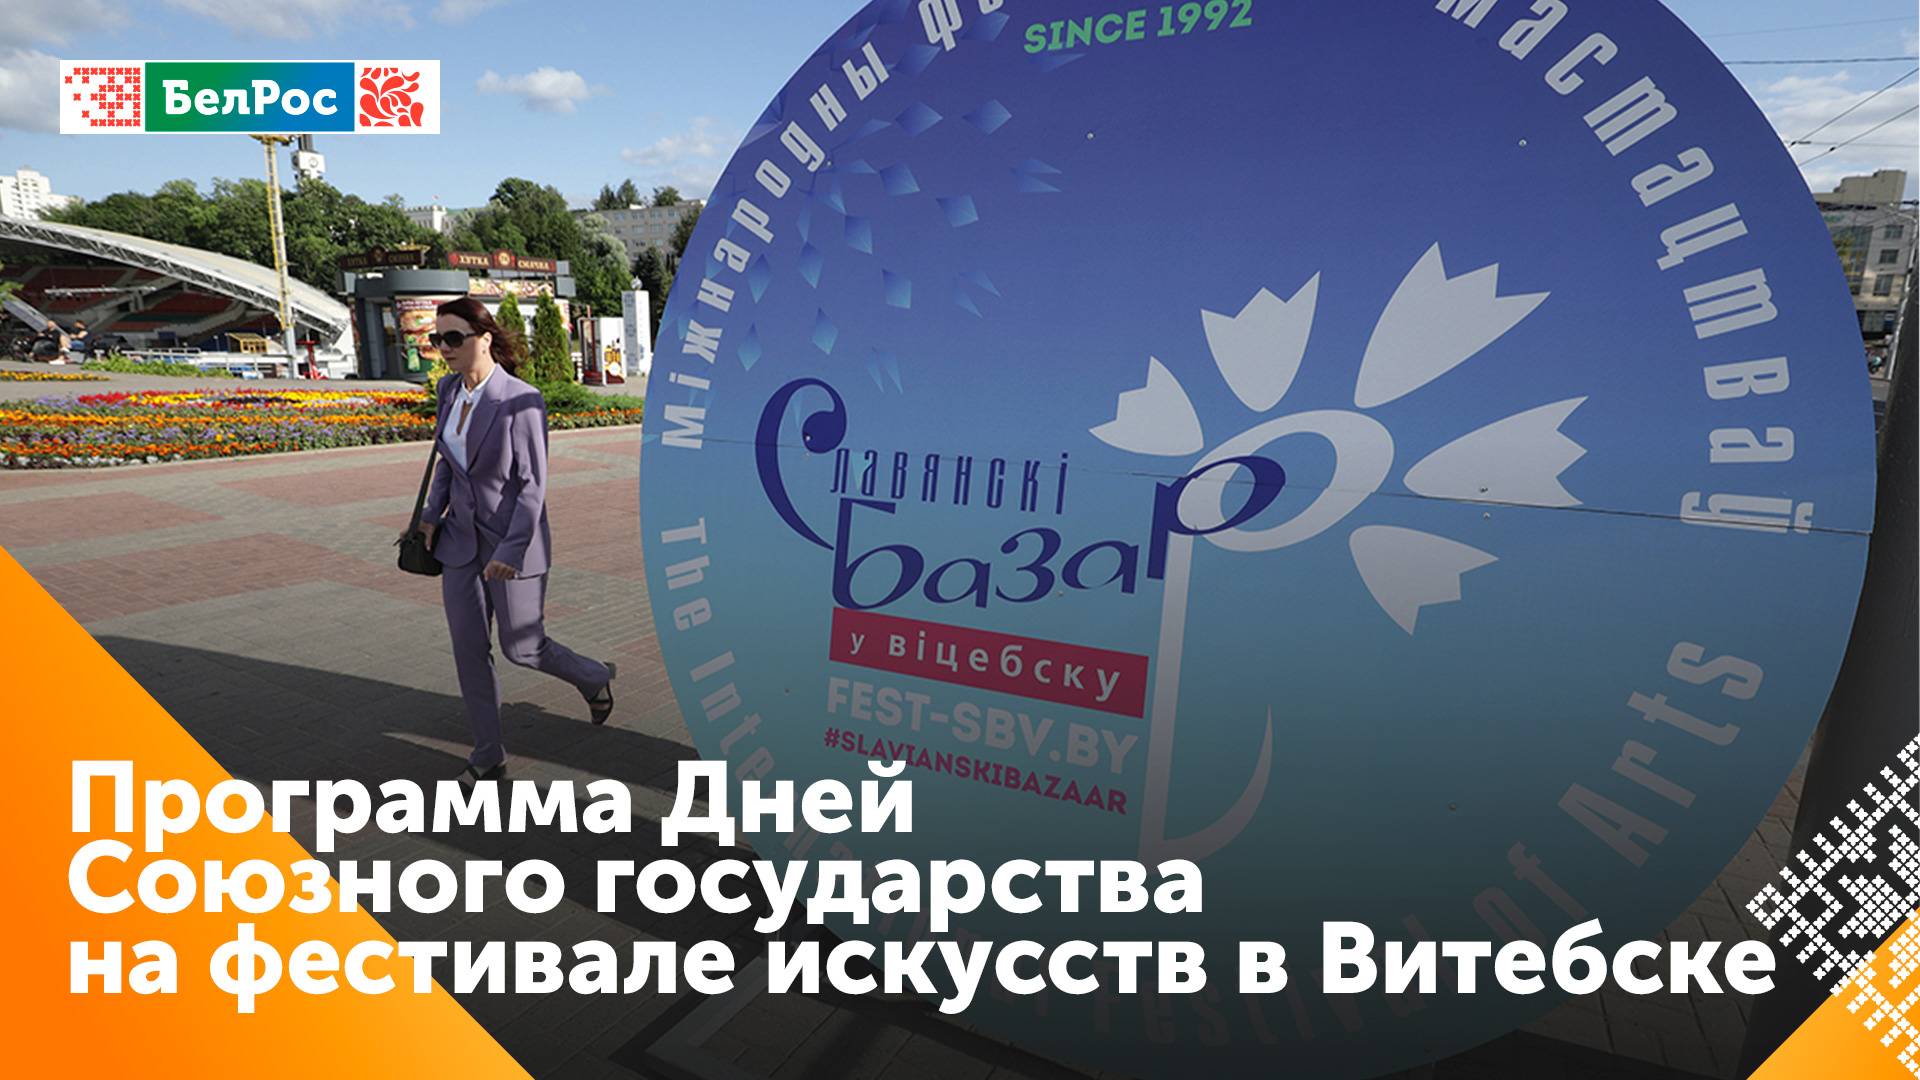 Стала известна программа Дней Союзного государства на фестивале искусств в Витебске